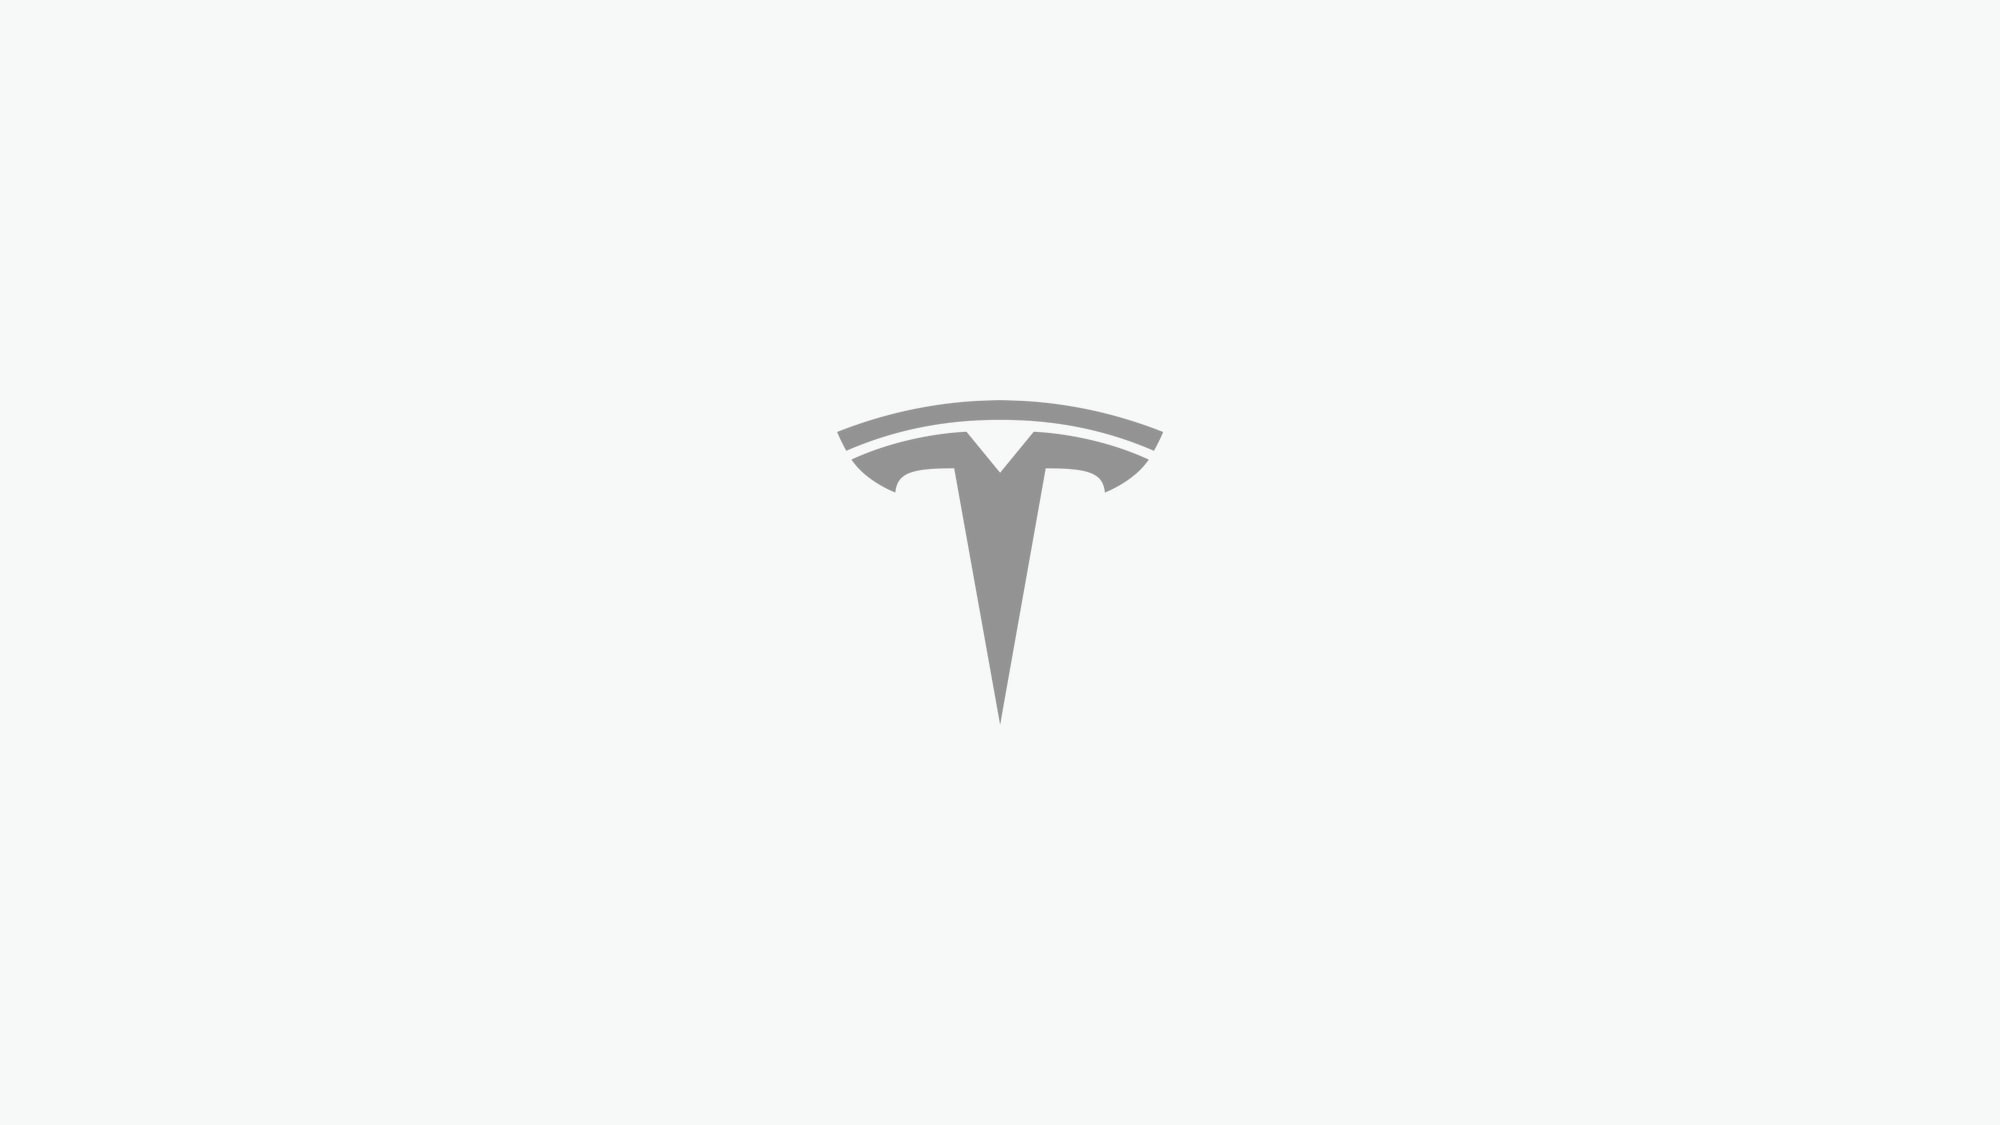 Tesla Powerwall feature in update 4.12